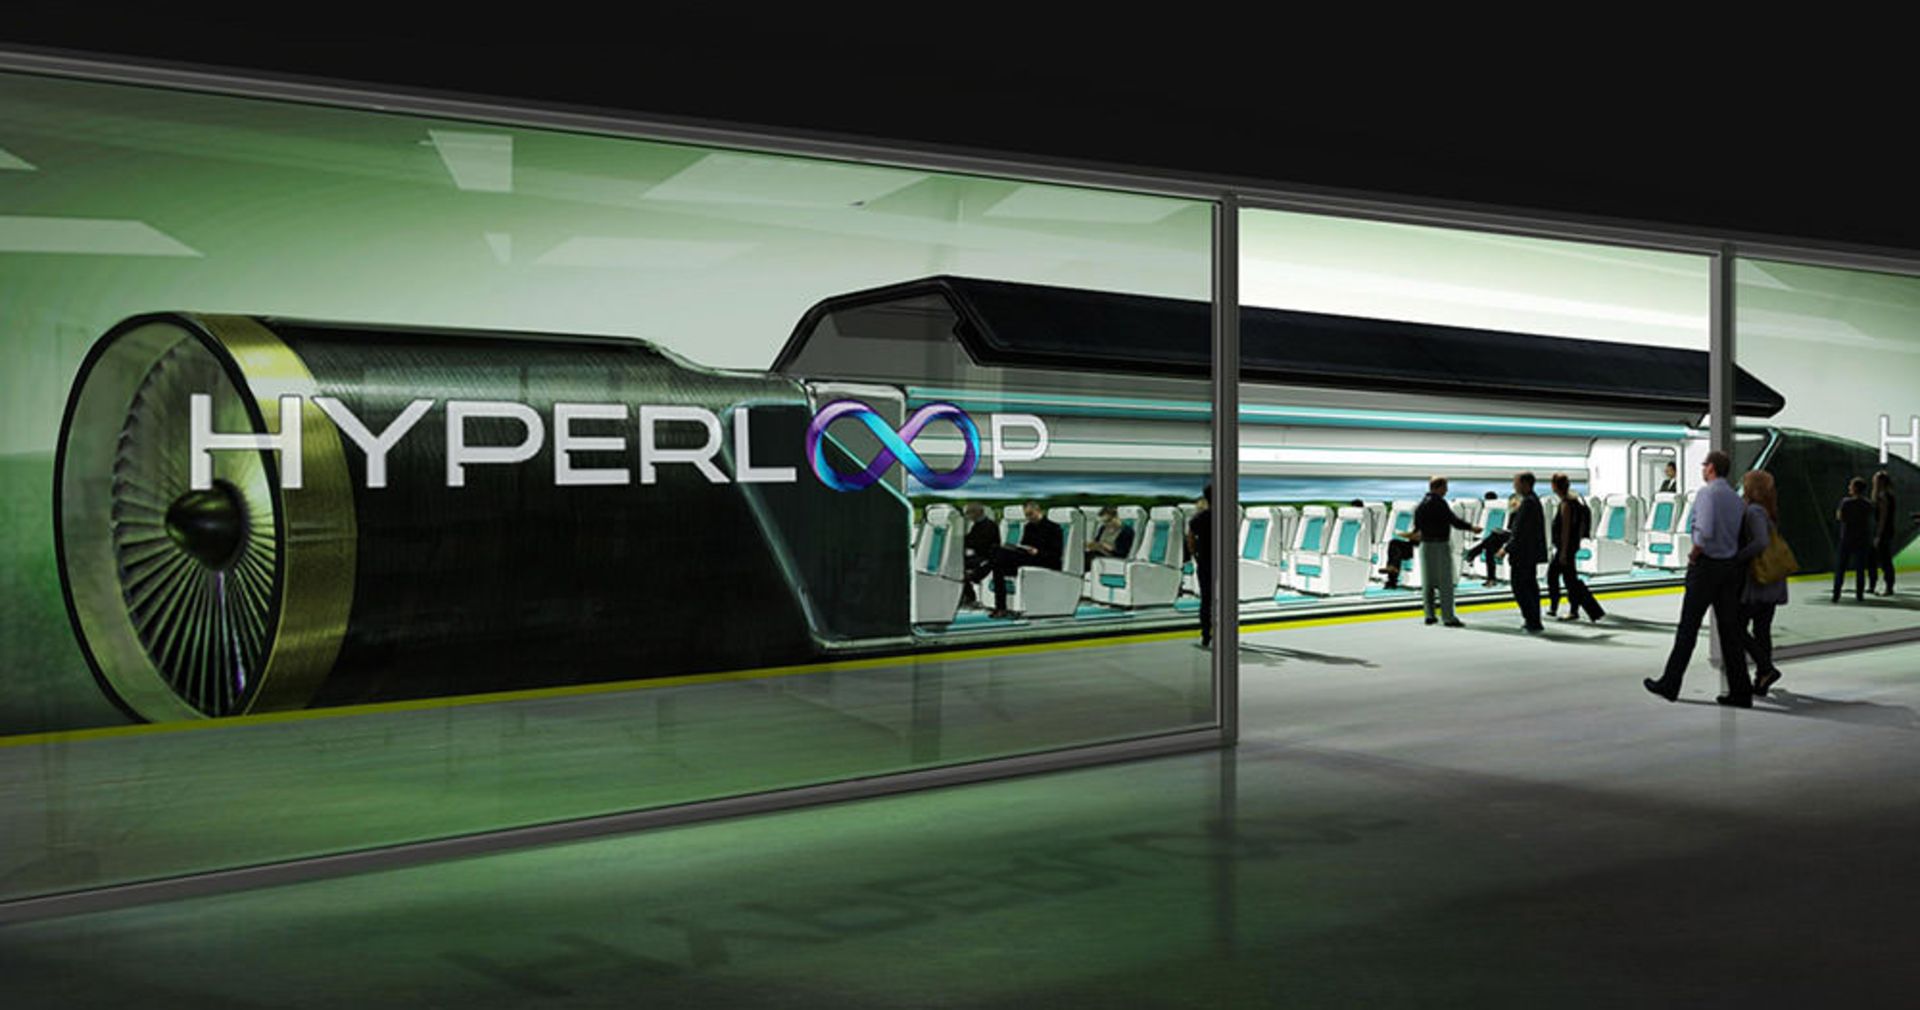 هایپرلوپ hyperloop